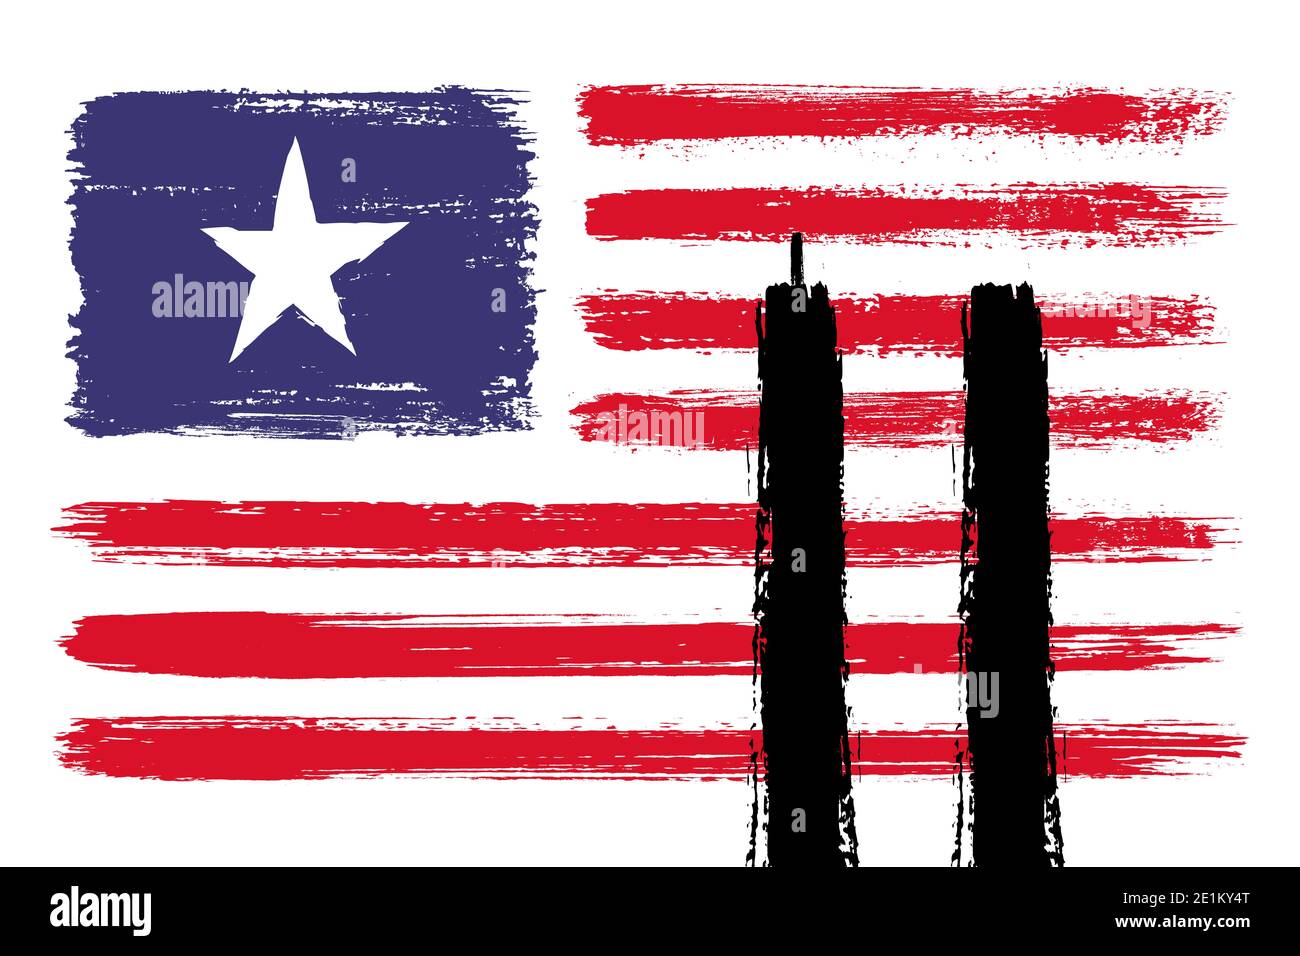 11 septembre, journée Patriot, souvenez-vous de 9 11. Illustration du drapeau américain ou américain avec les tours jumelles. Se souvenir. Nous nous en souviendrons toujours Banque D'Images